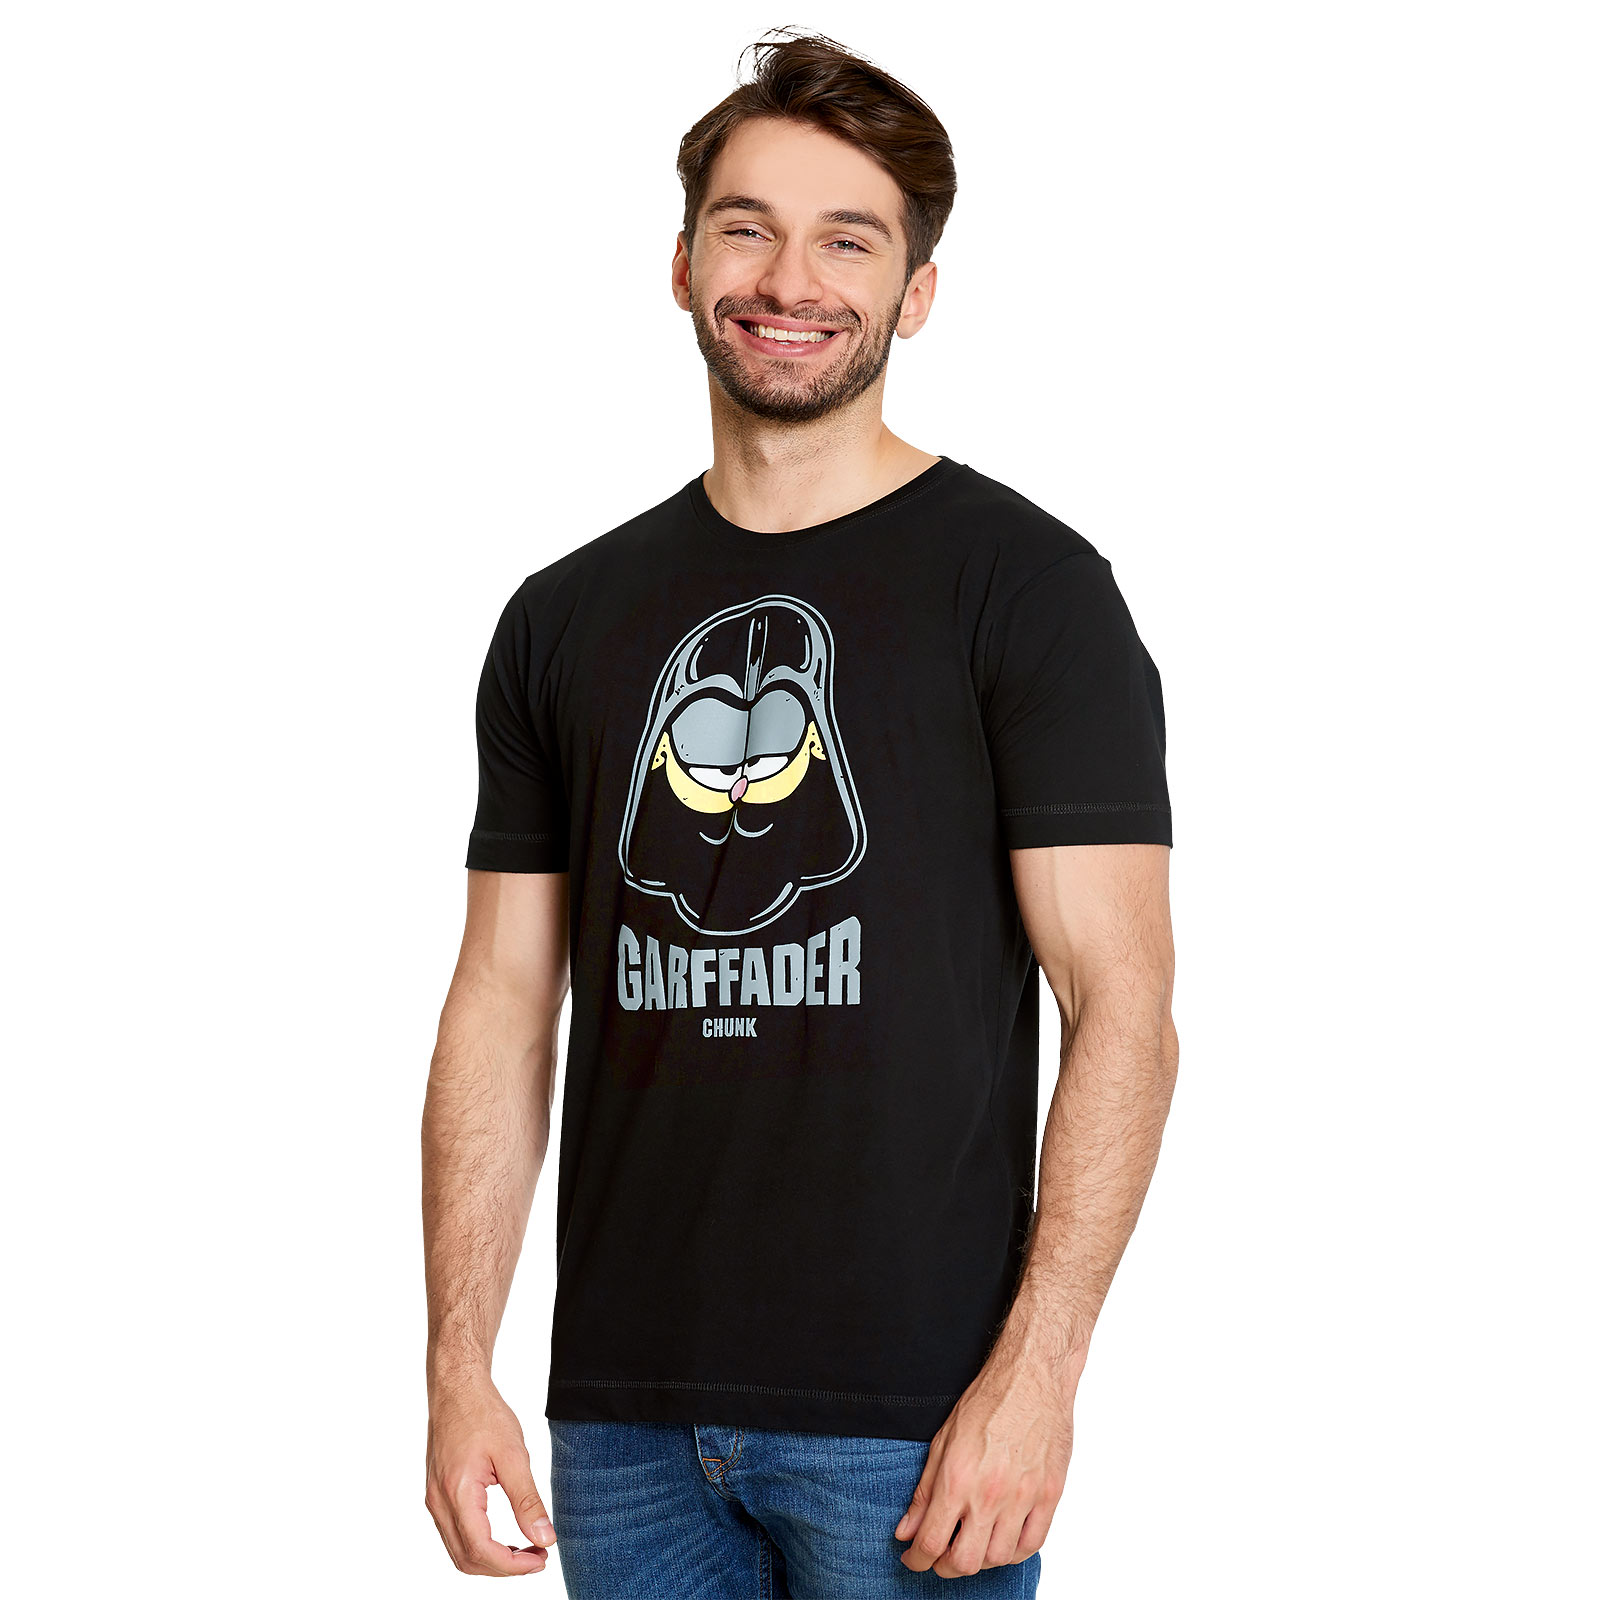 Garffader T-Shirt für Star Wars Fans schwarz